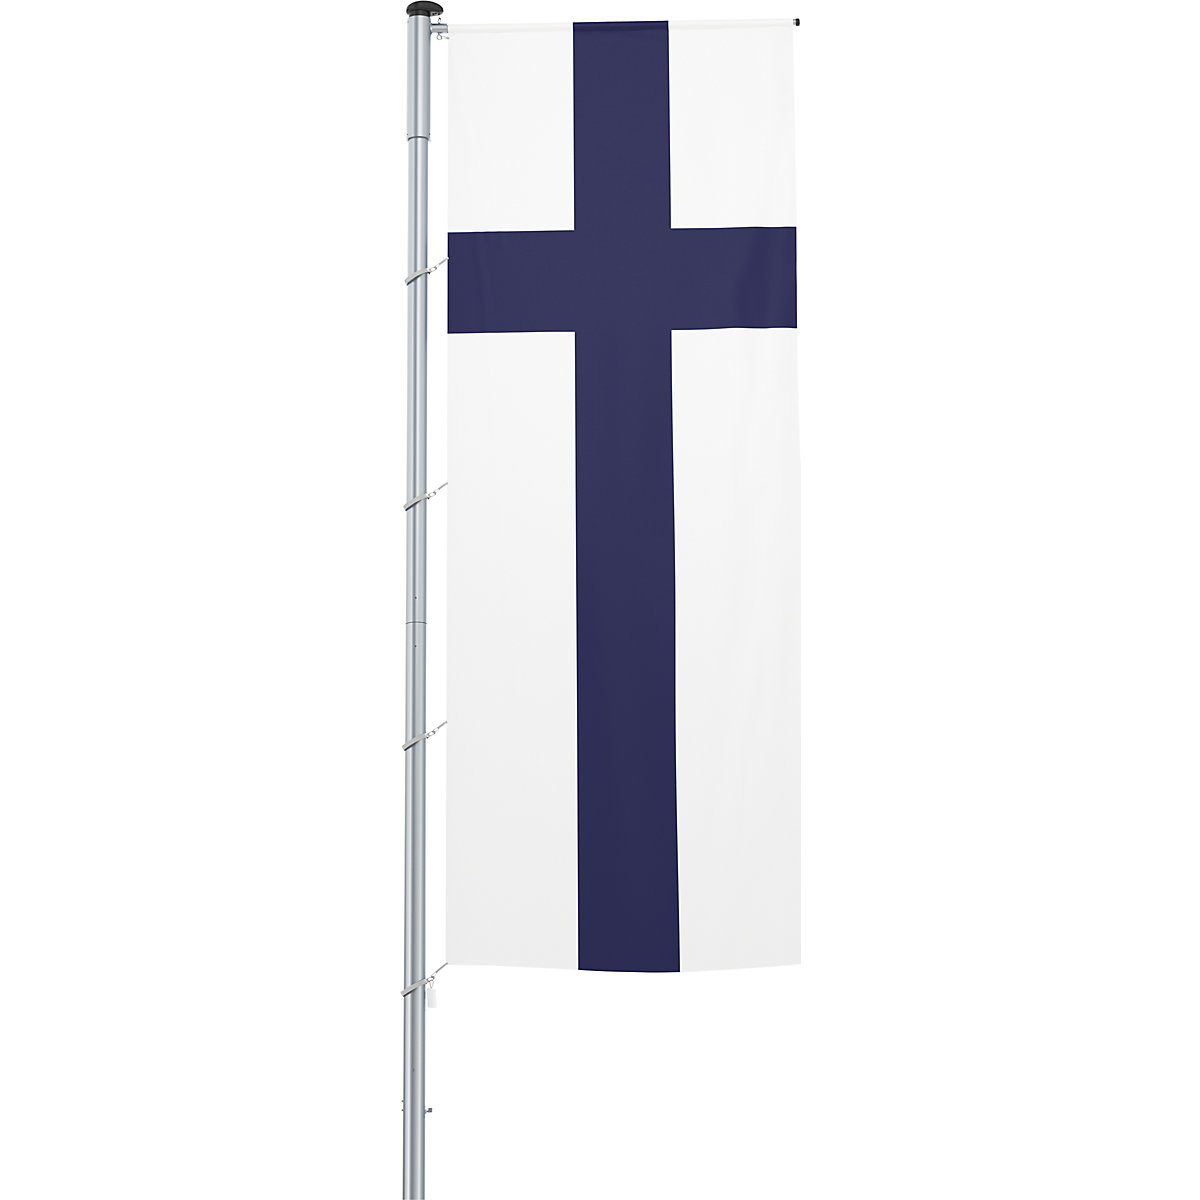 Mannus – Bandera con pluma/bandera del país, formato 1,2 x 3 m, Finlandia